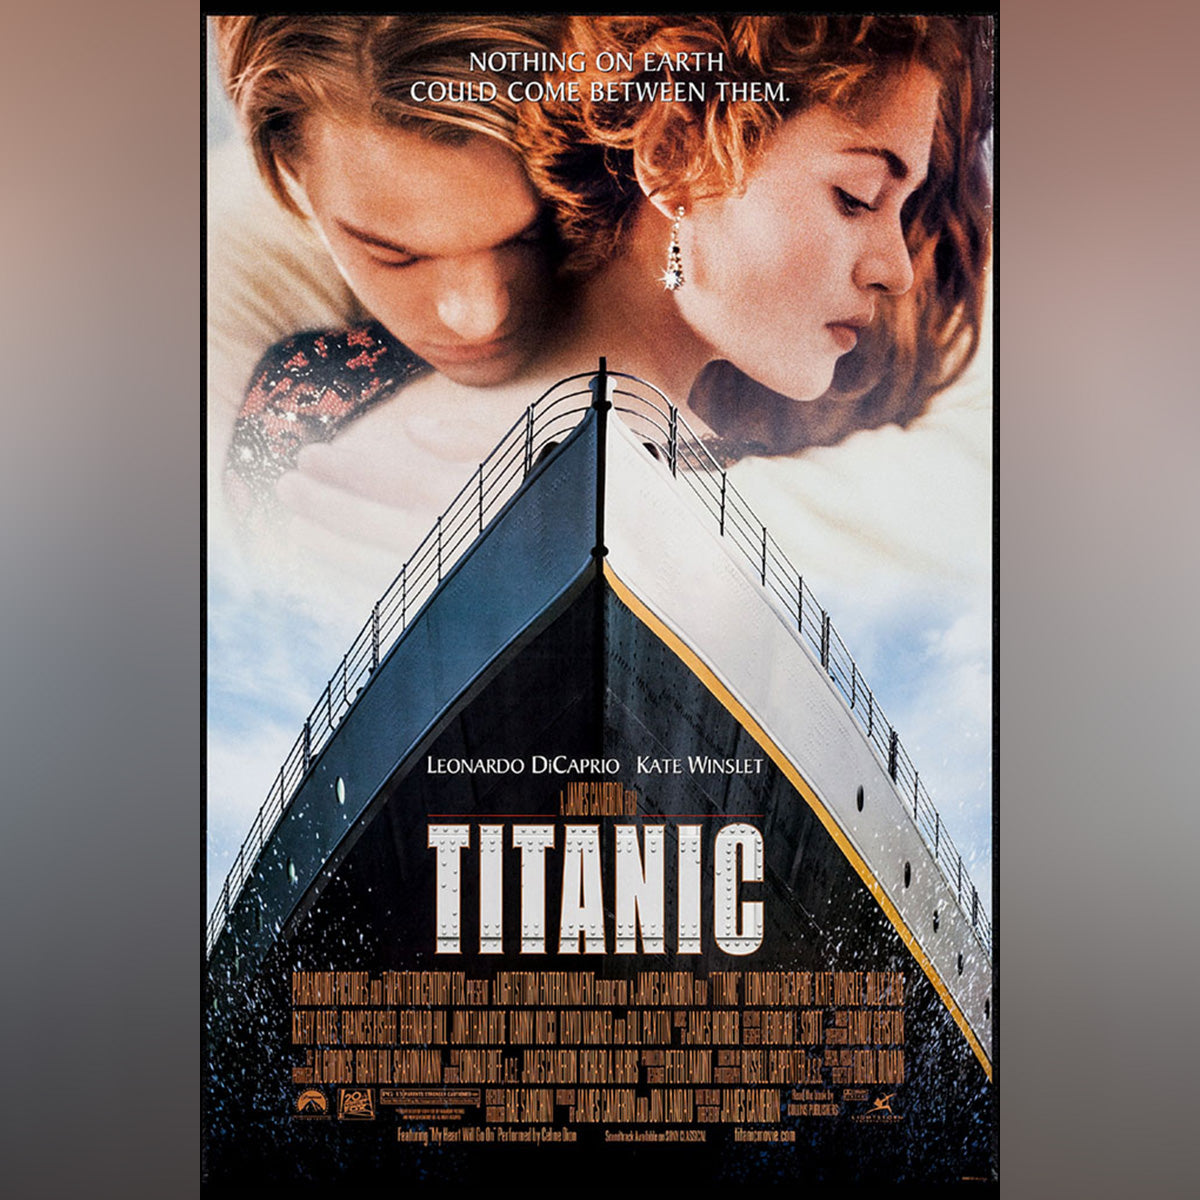 Original Movie Poster of Titanic (1997)